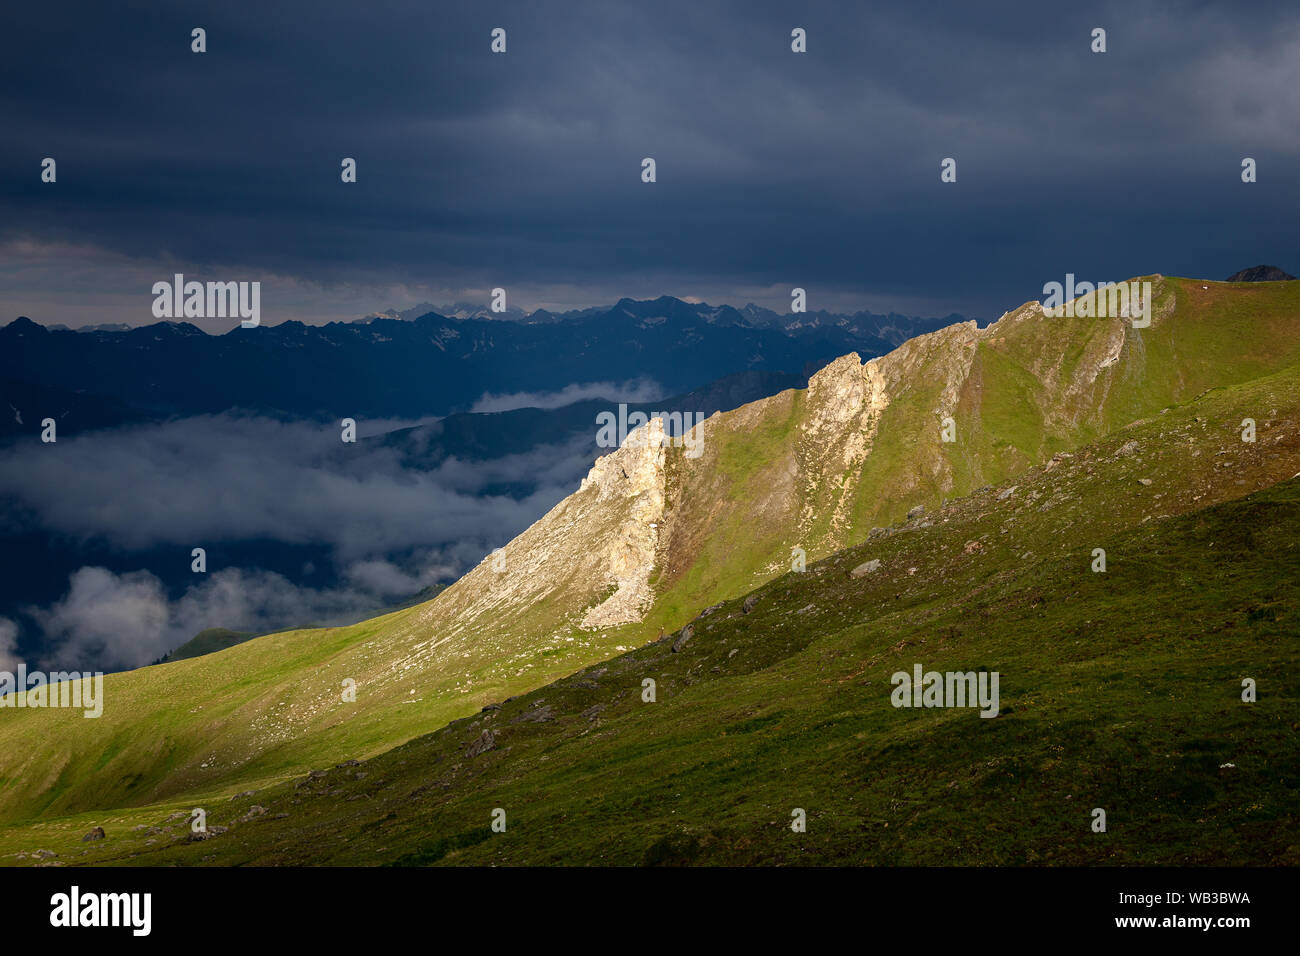 Sonnenlicht auf die Berge. Eindrucksvolle Bergwelt, dunkle bewölkten Himmel. Glocknergruppe massiv. Österreichischen Alpen. Stockfoto